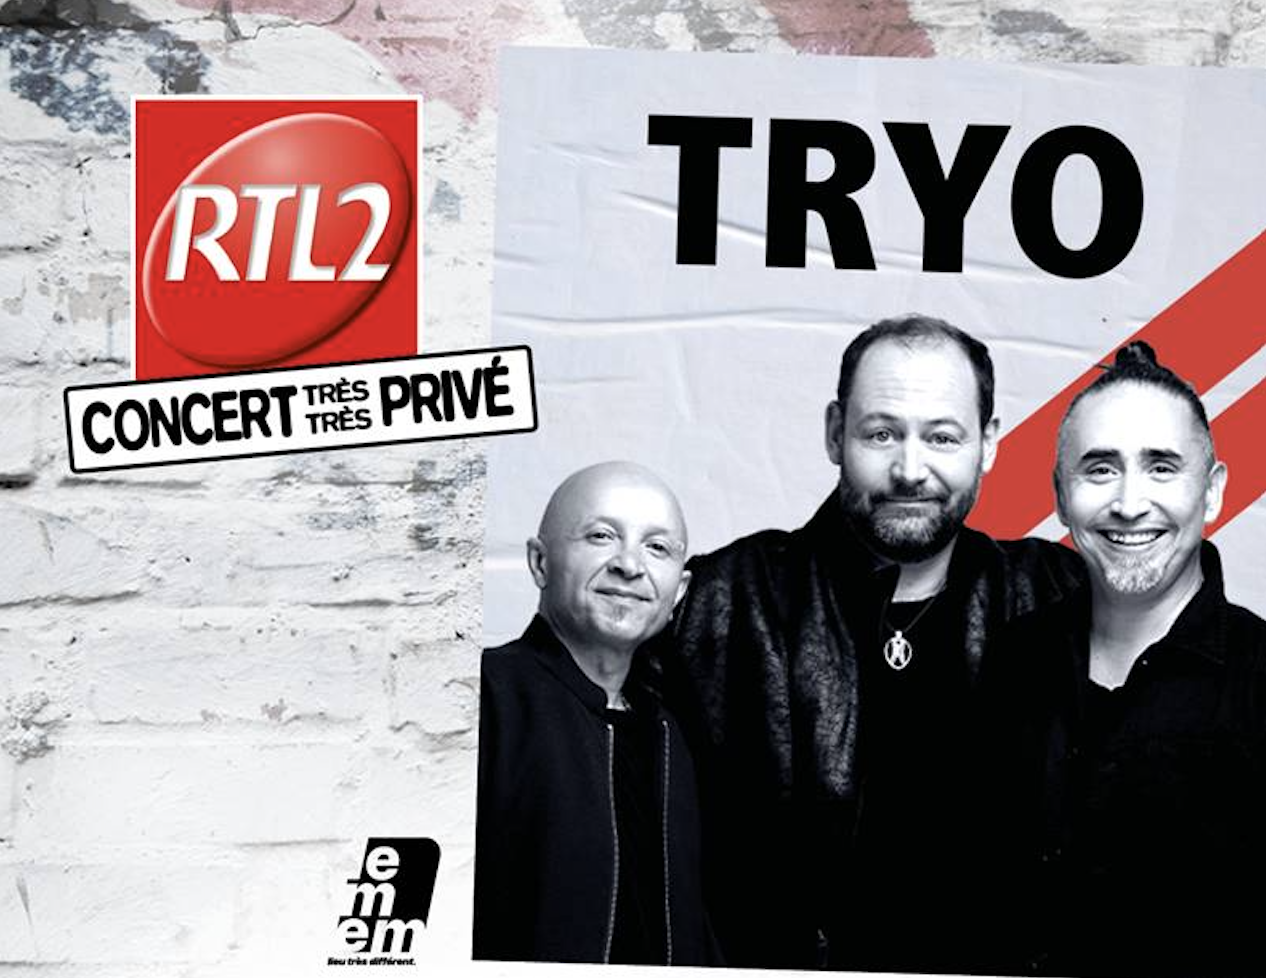 Le groupe Tryo en concert avec RTL2